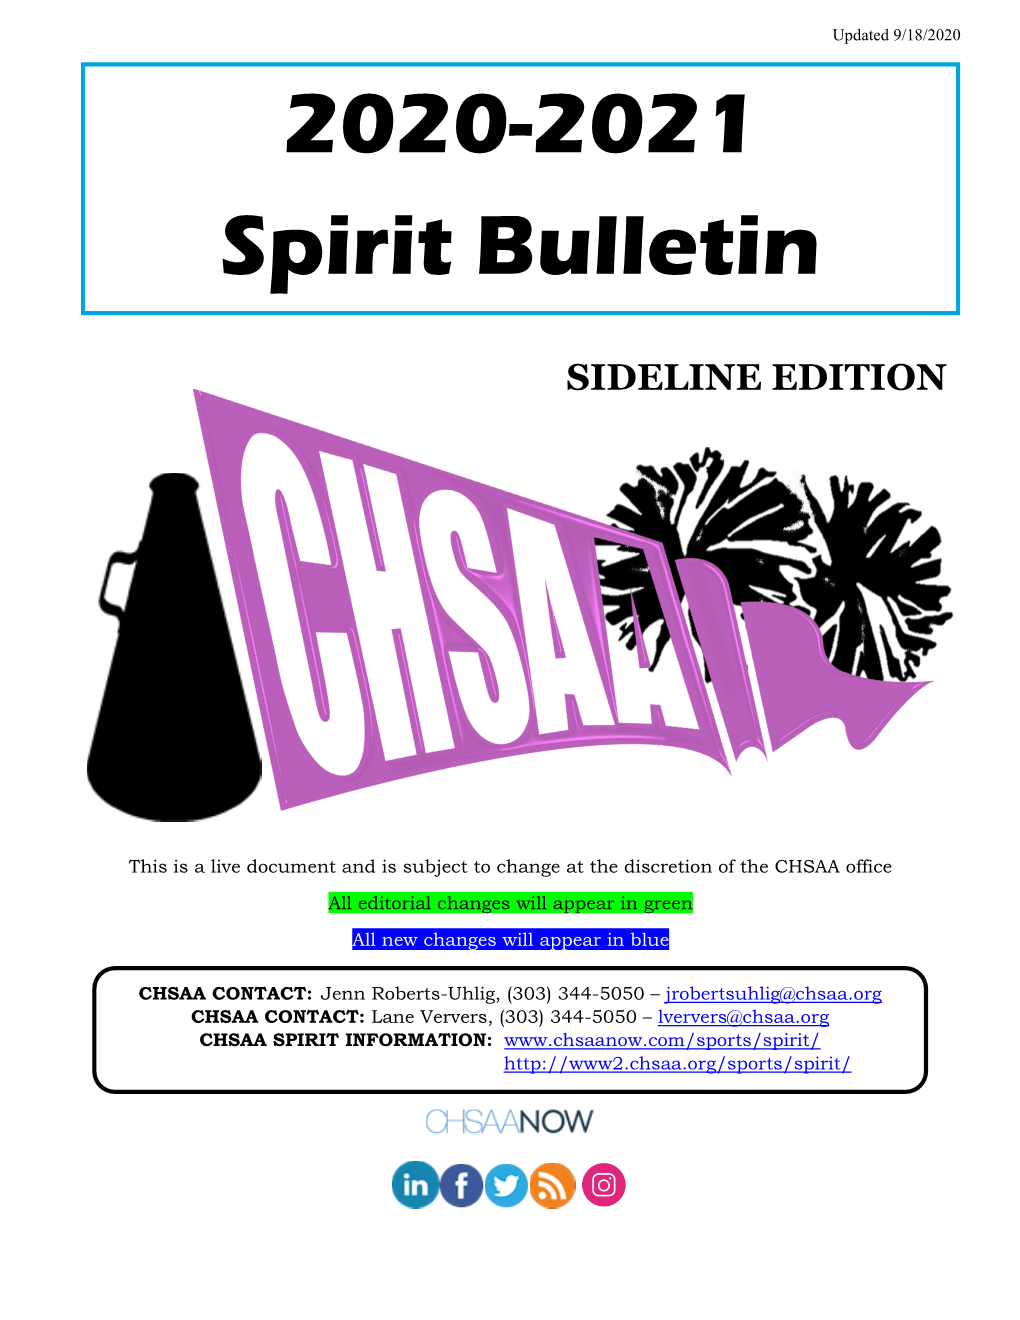 2020-2021 Spirit Bulletin